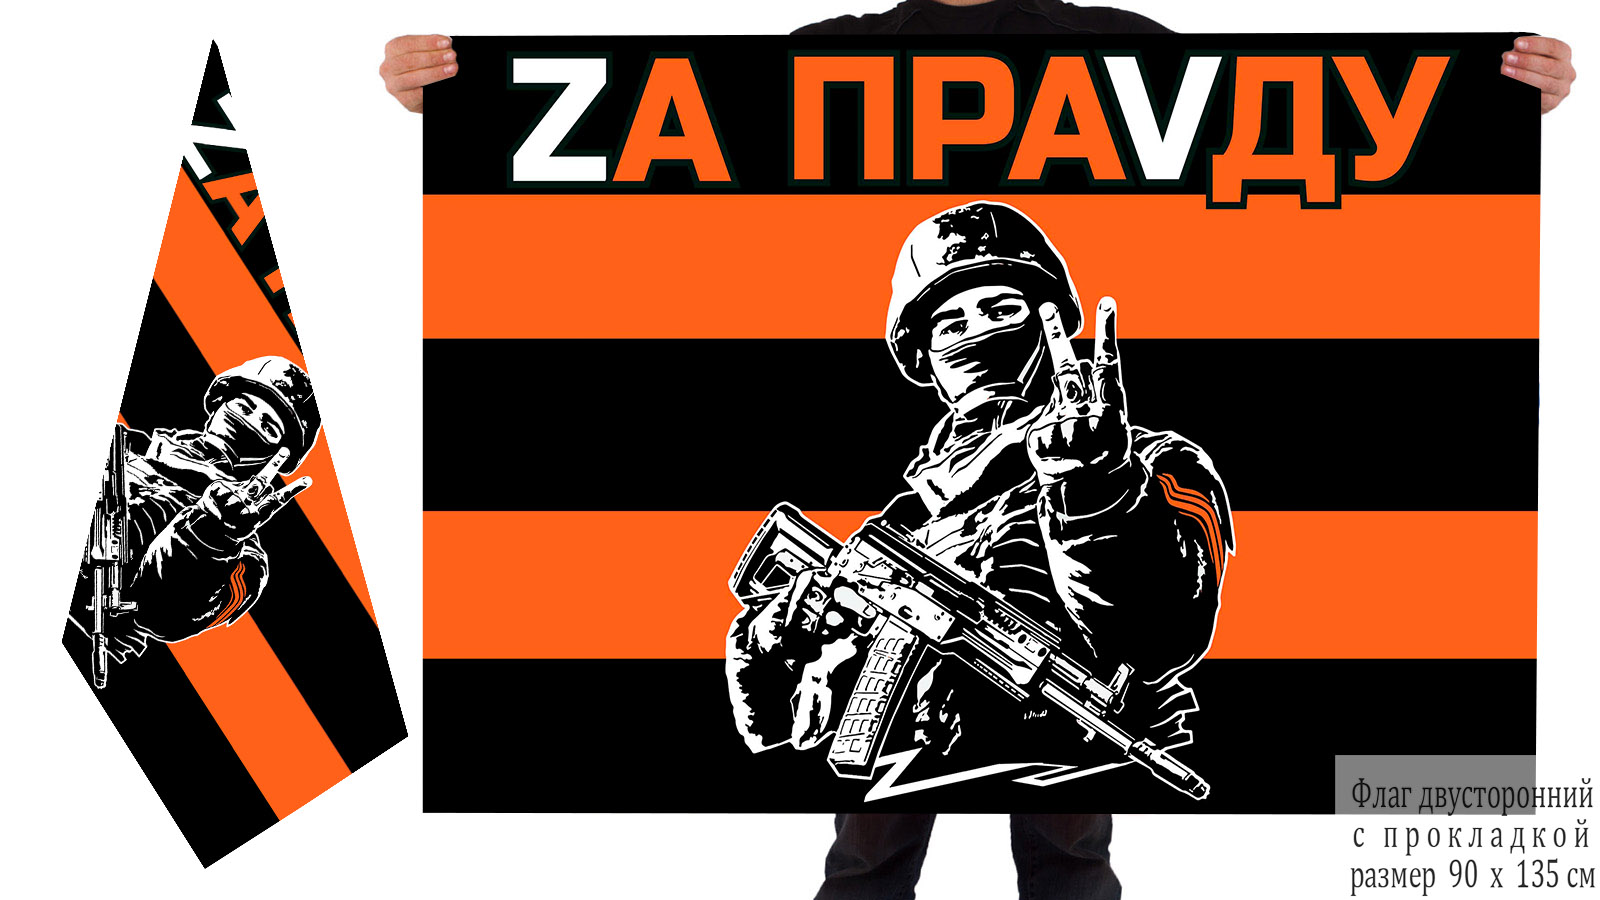 Двусторонний гвардейский флаг "Zа праVду"